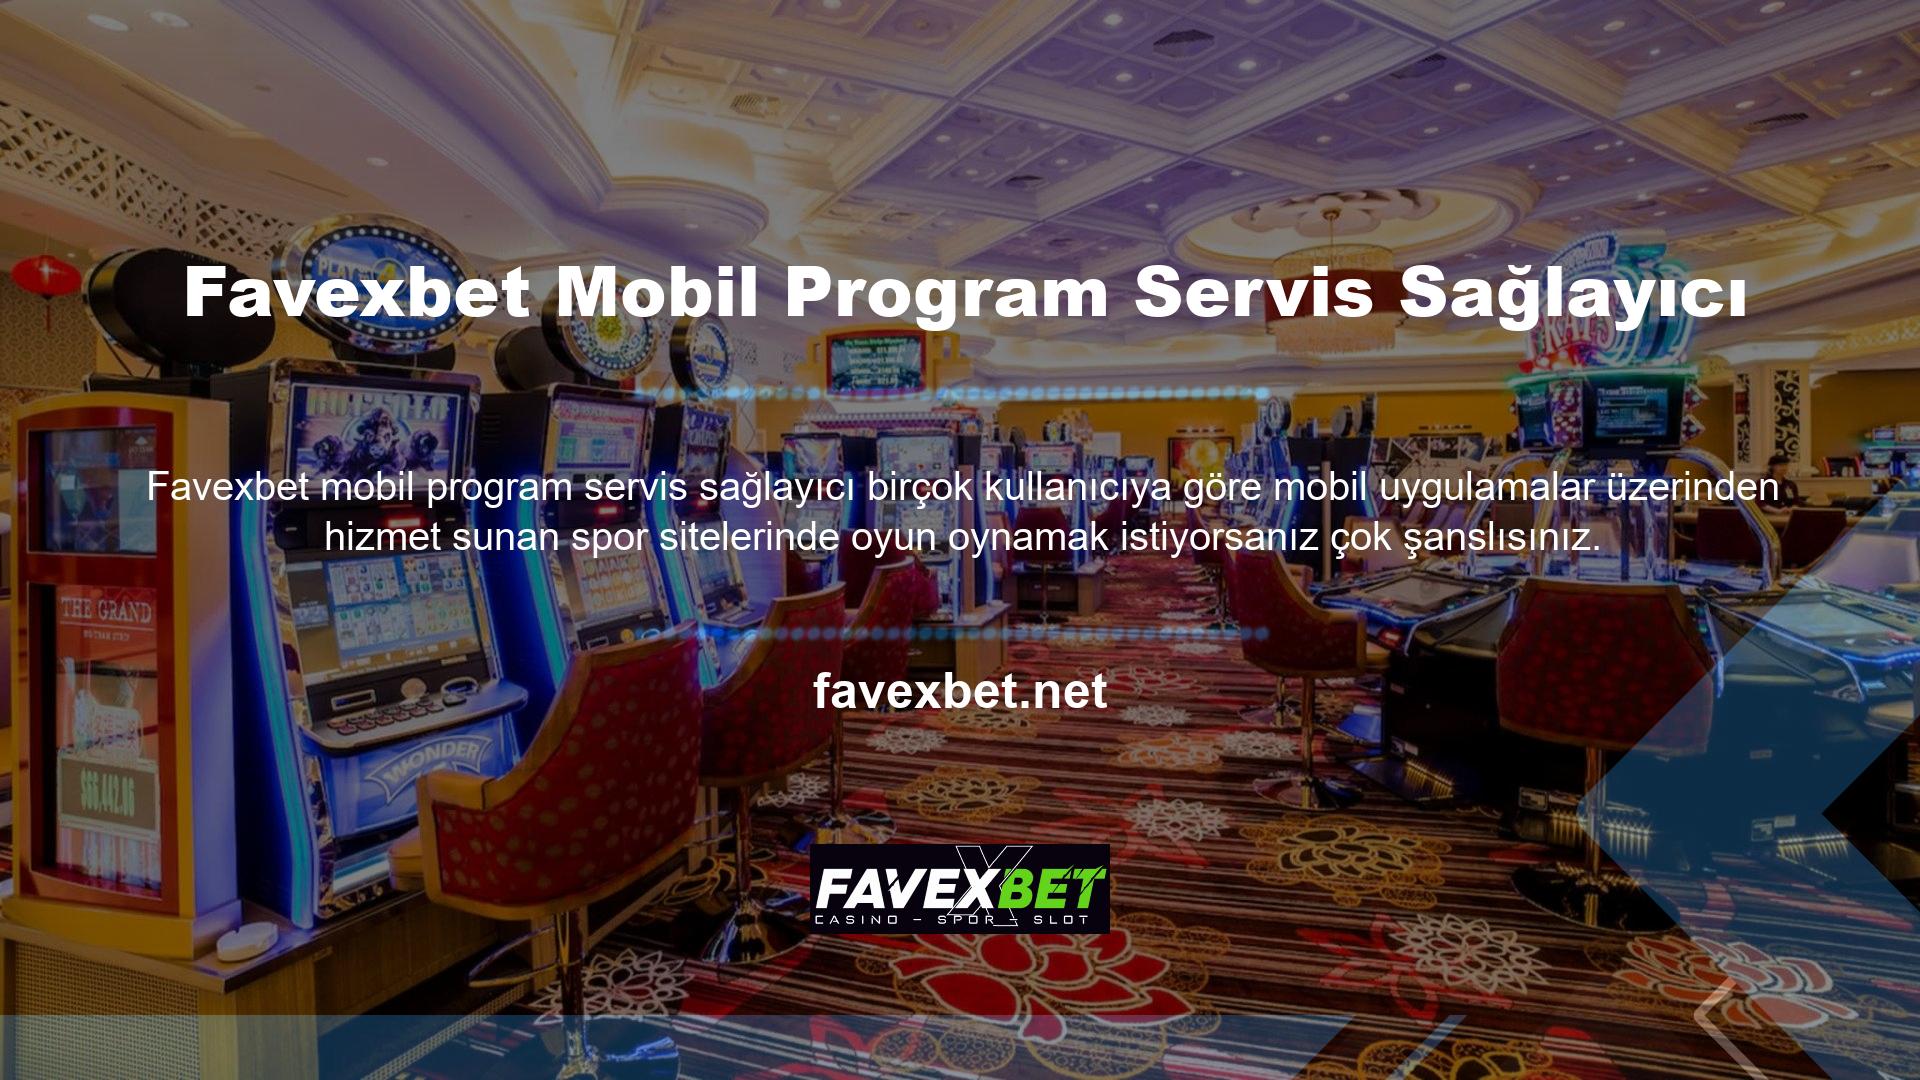 Neyse ki Favexbet, mobil uygulaması olan bir spor sitesi olarak da ilgi görüyor